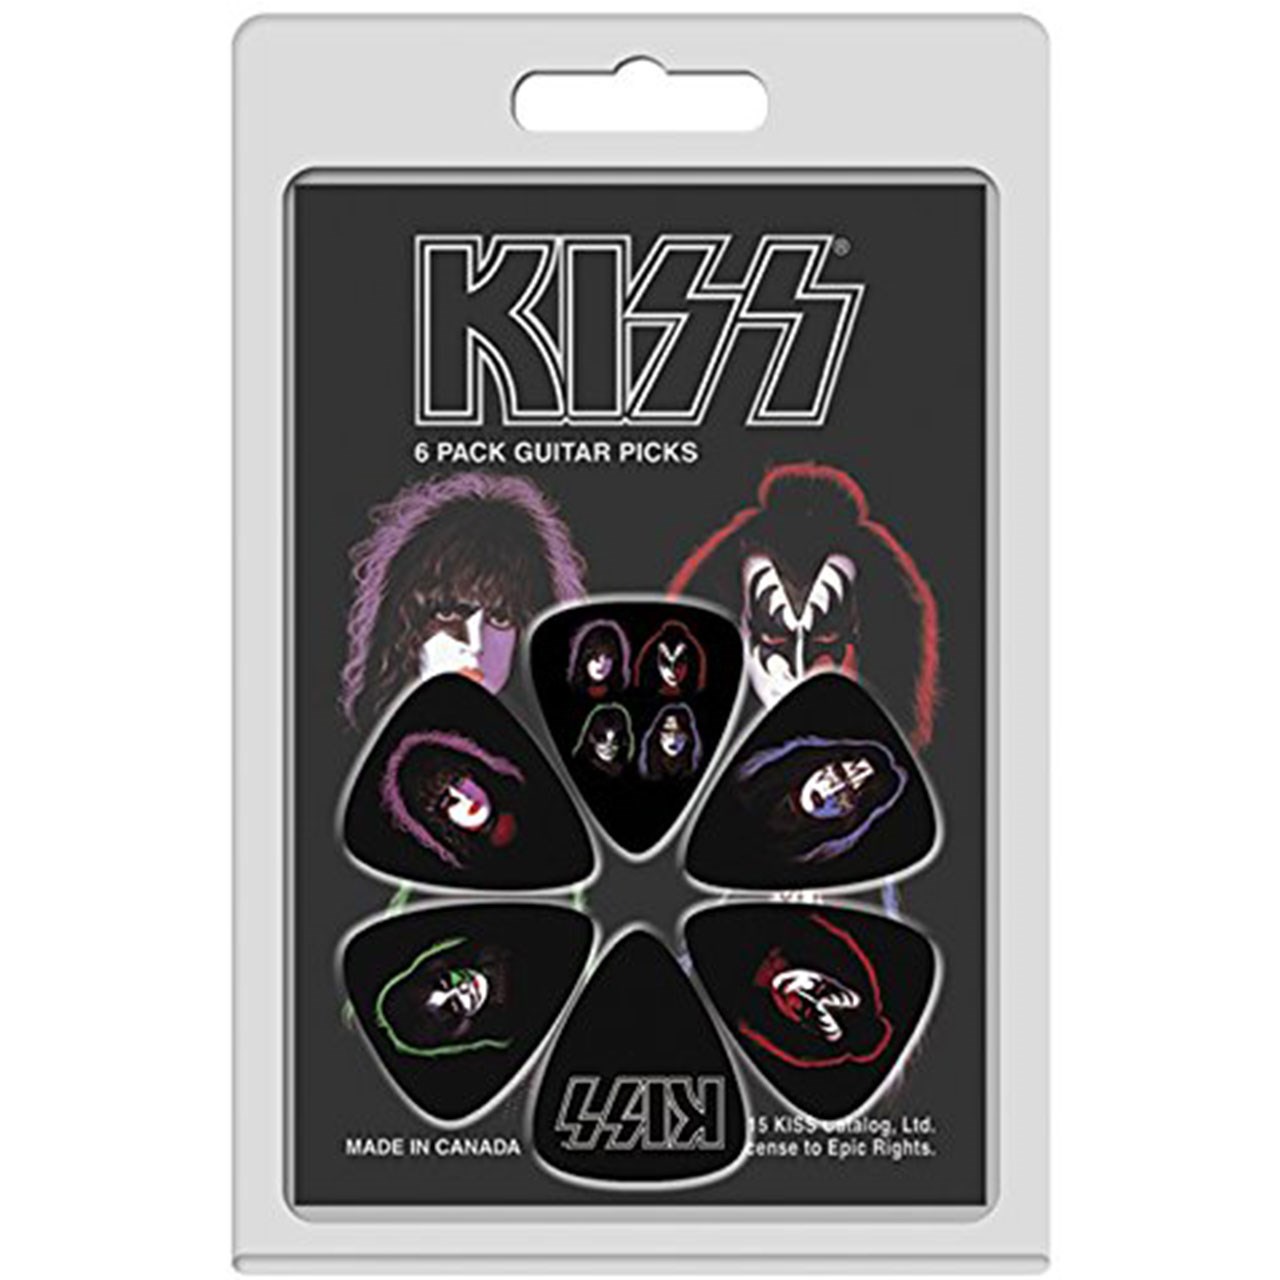 نقد و بررسی پیک گیتار پریس مدل Kiss بسته 6 عددی توسط خریداران